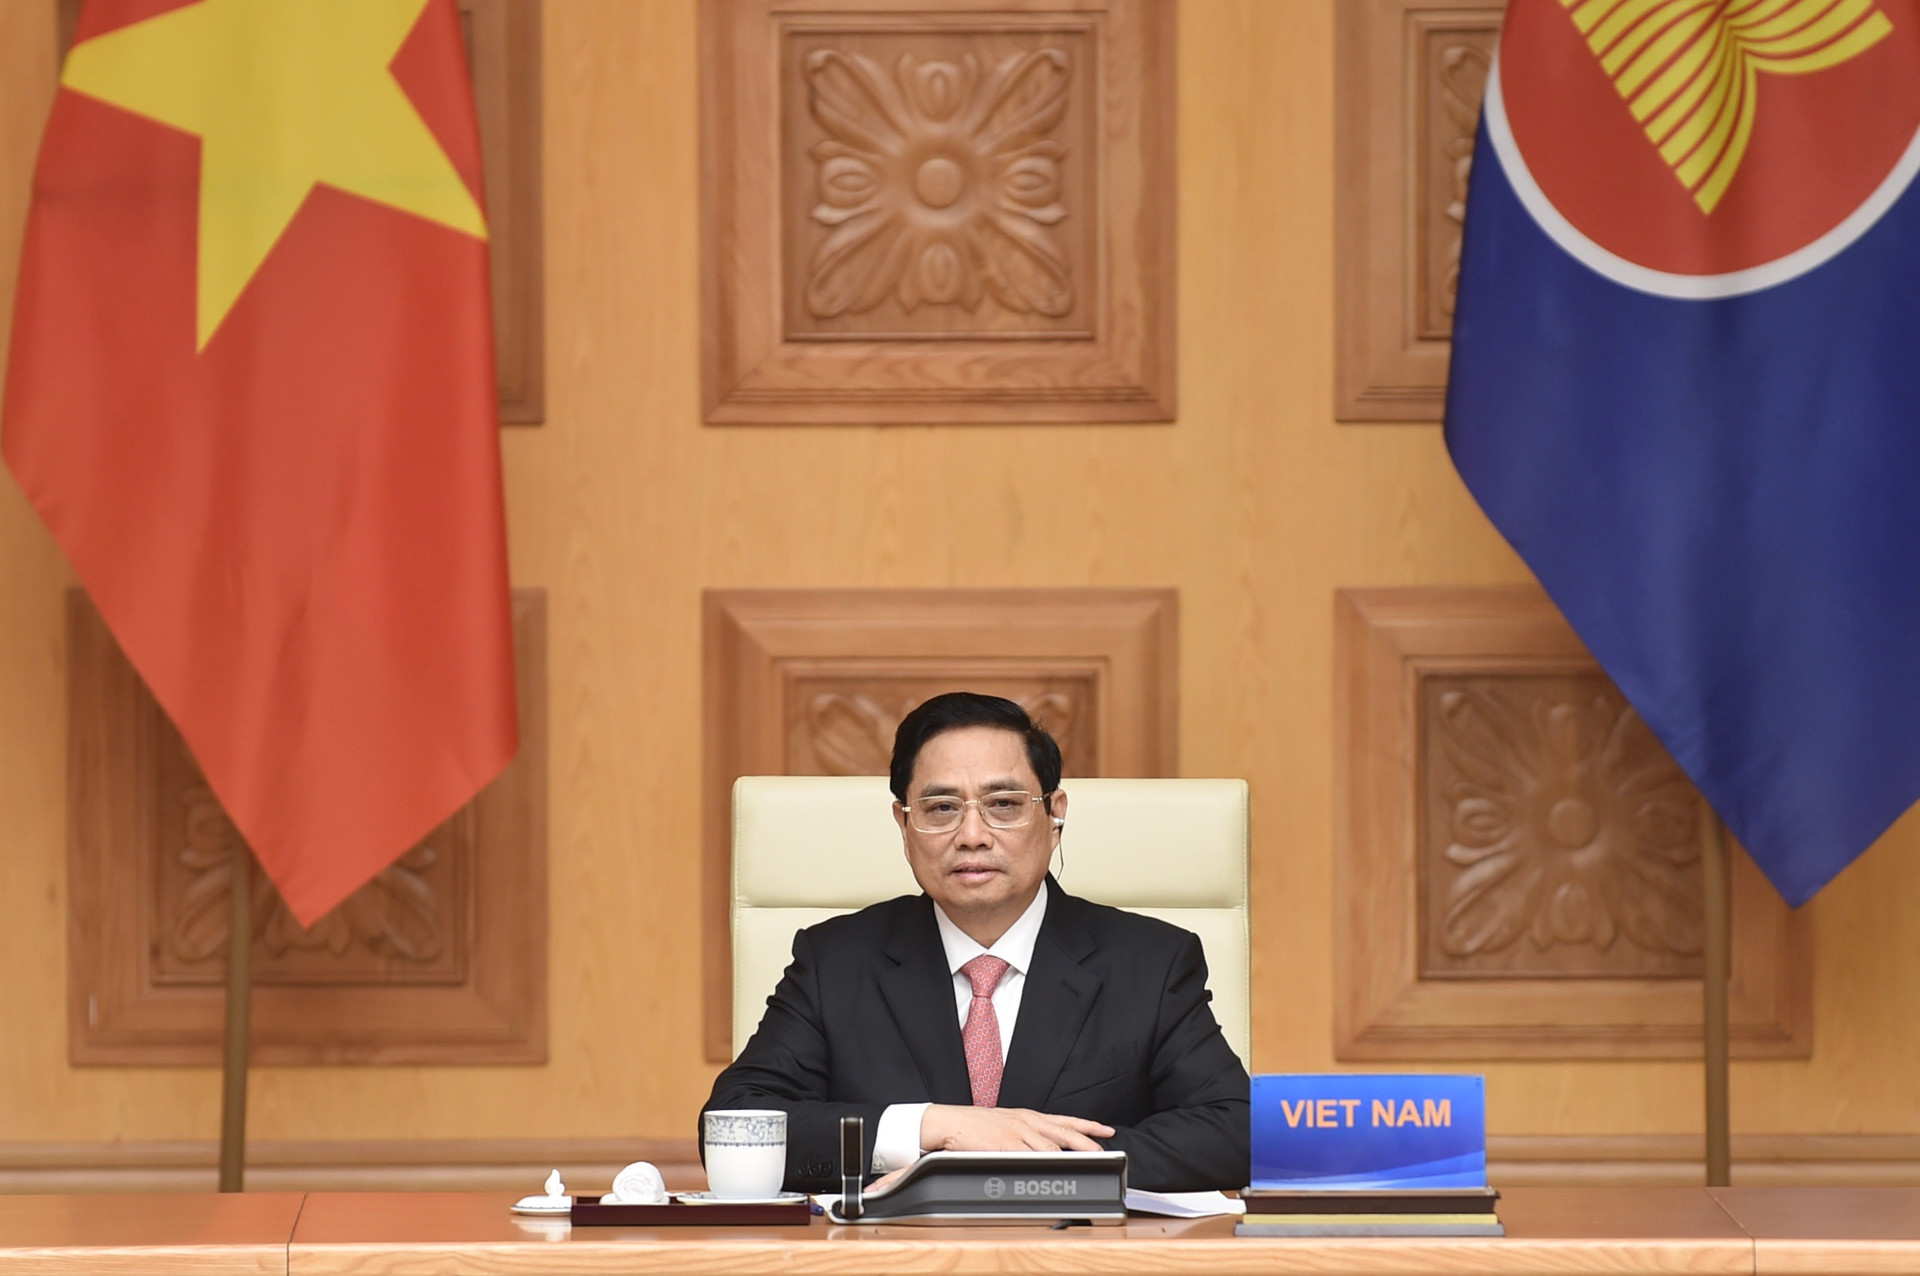 Thủ tướng nhấn mạnh quan điểm về Biển Đông tại Hội nghị ASEAN - Trung Quốc - 1